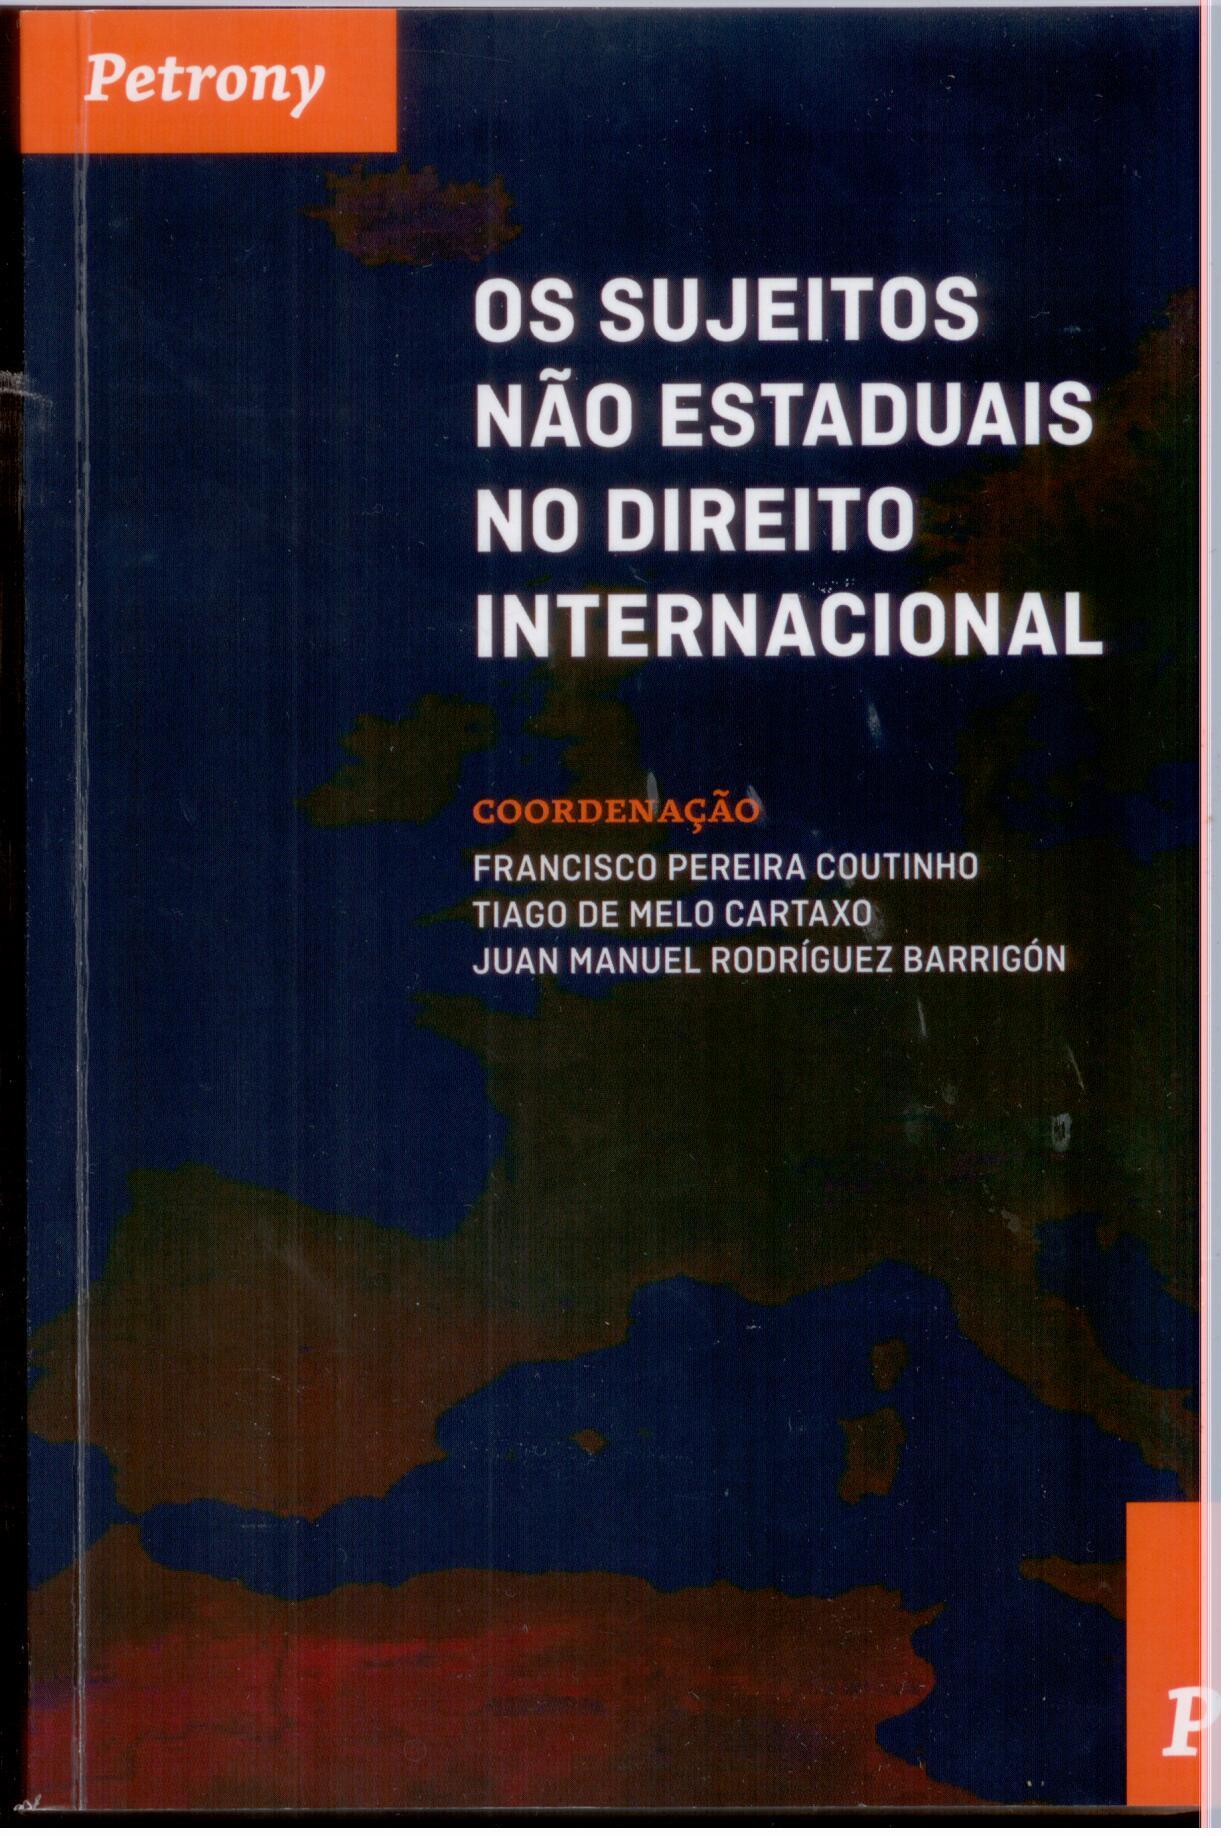 Imagen de portada del libro Os sujeitos não estaduais no direito internacional